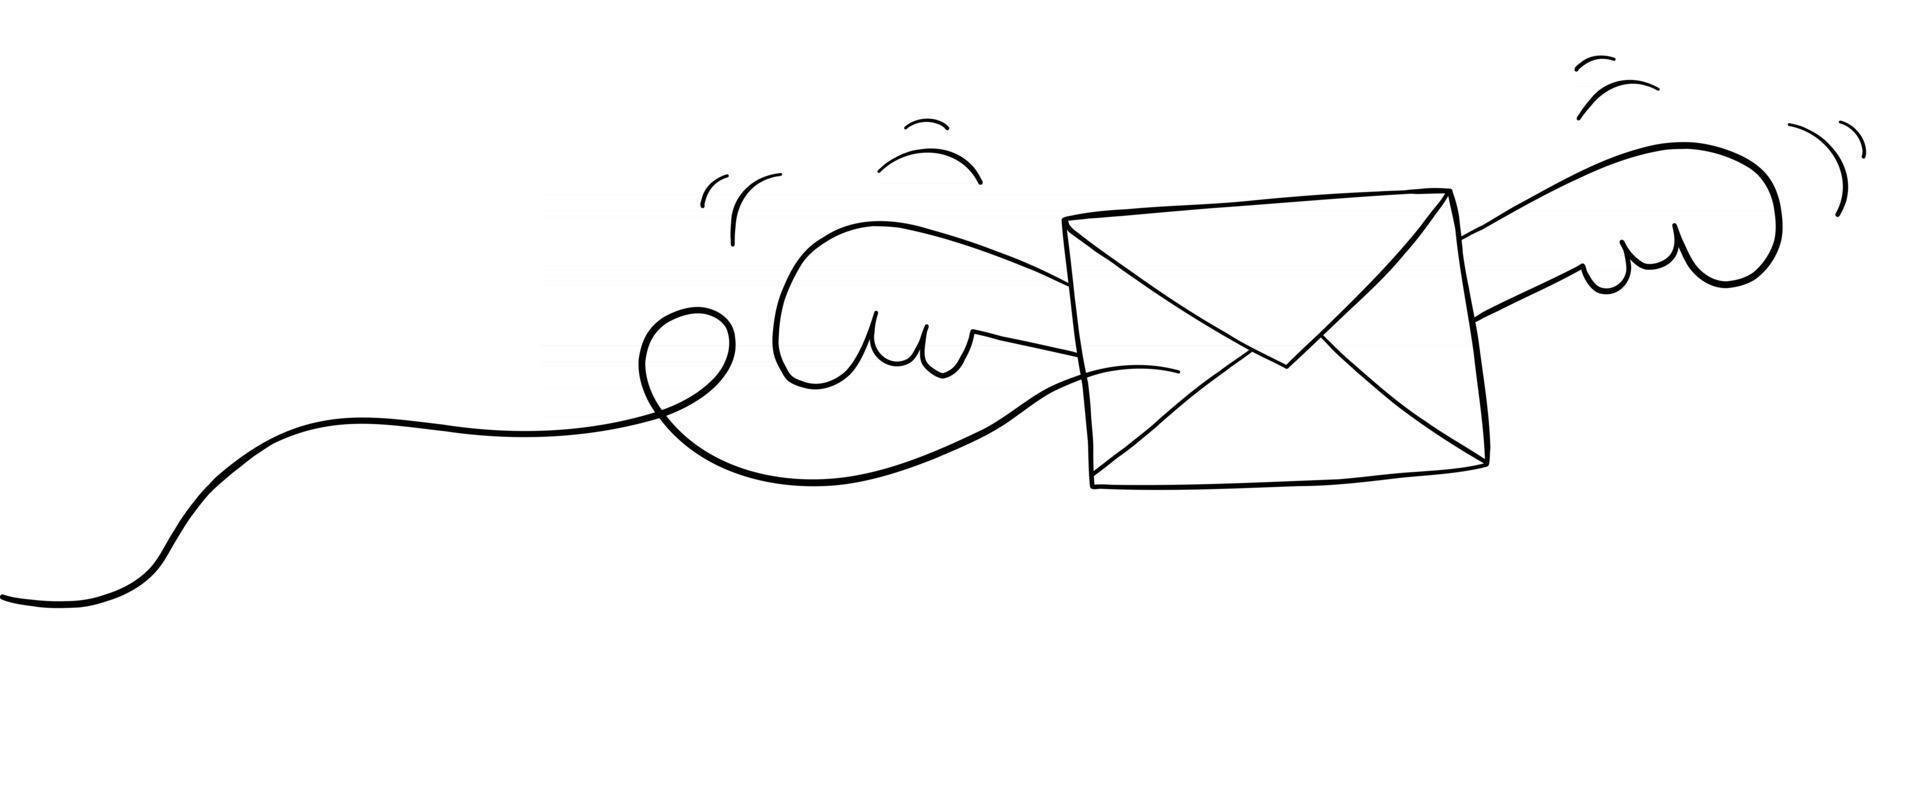 illustration de vecteur de dessin animé d'enveloppe volante ailée